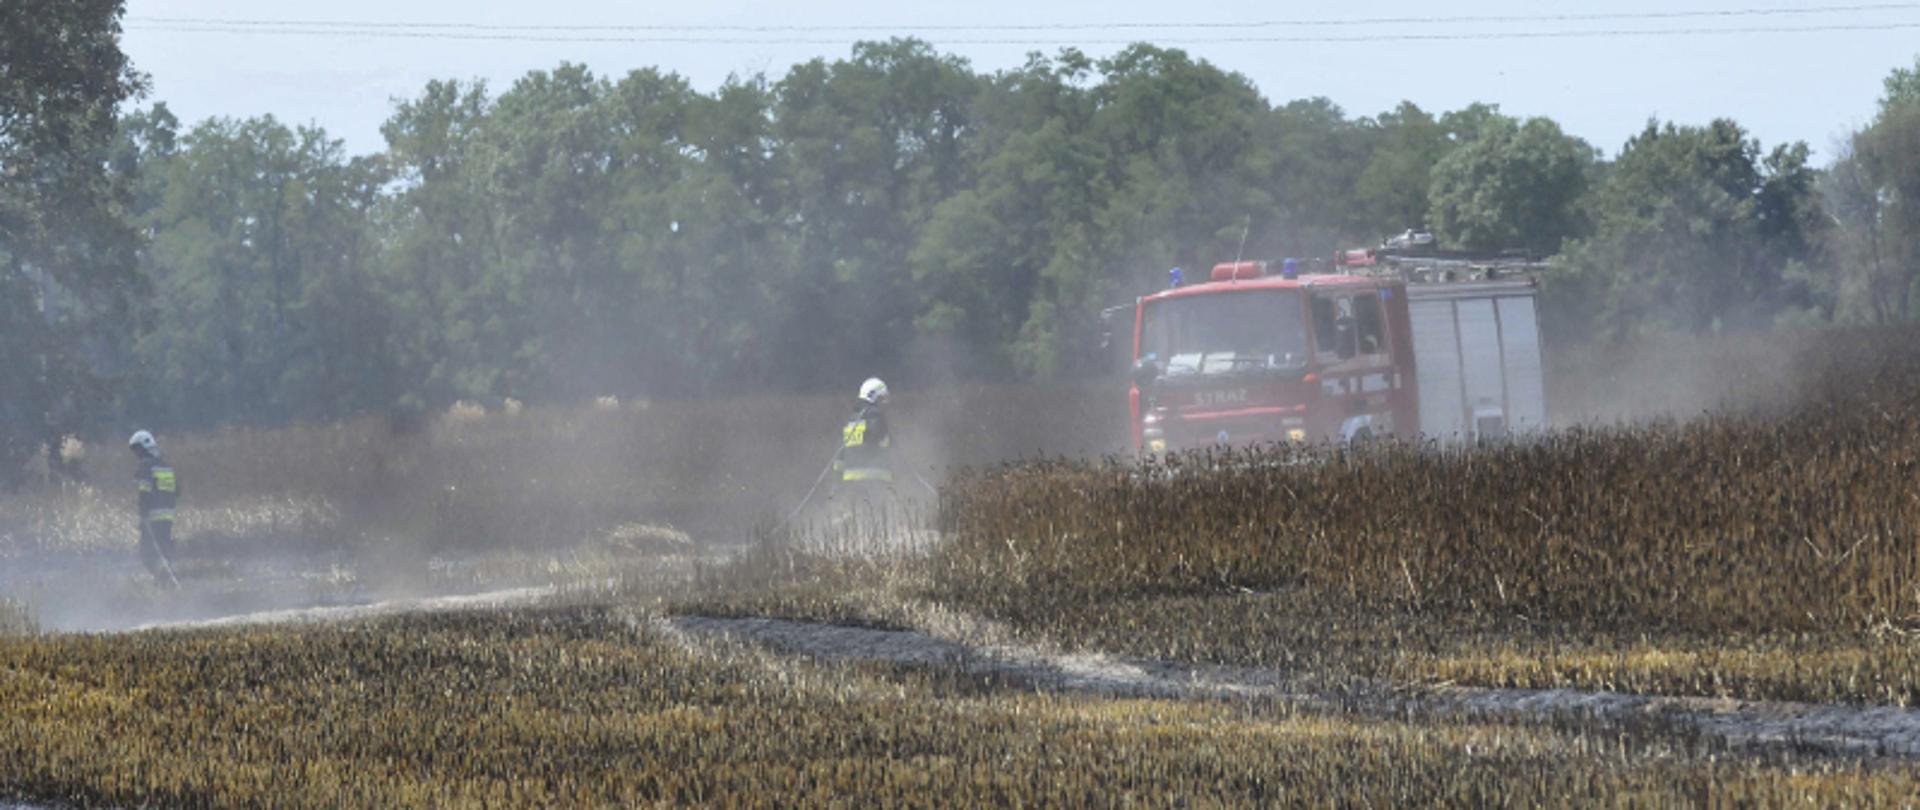 SEZON NA ŻNIWA.. Na zdjęciu widać pole na którym doszło do pożaru zboża, wóz strażacki i strażaków gaszących pożar, w tle drzewa